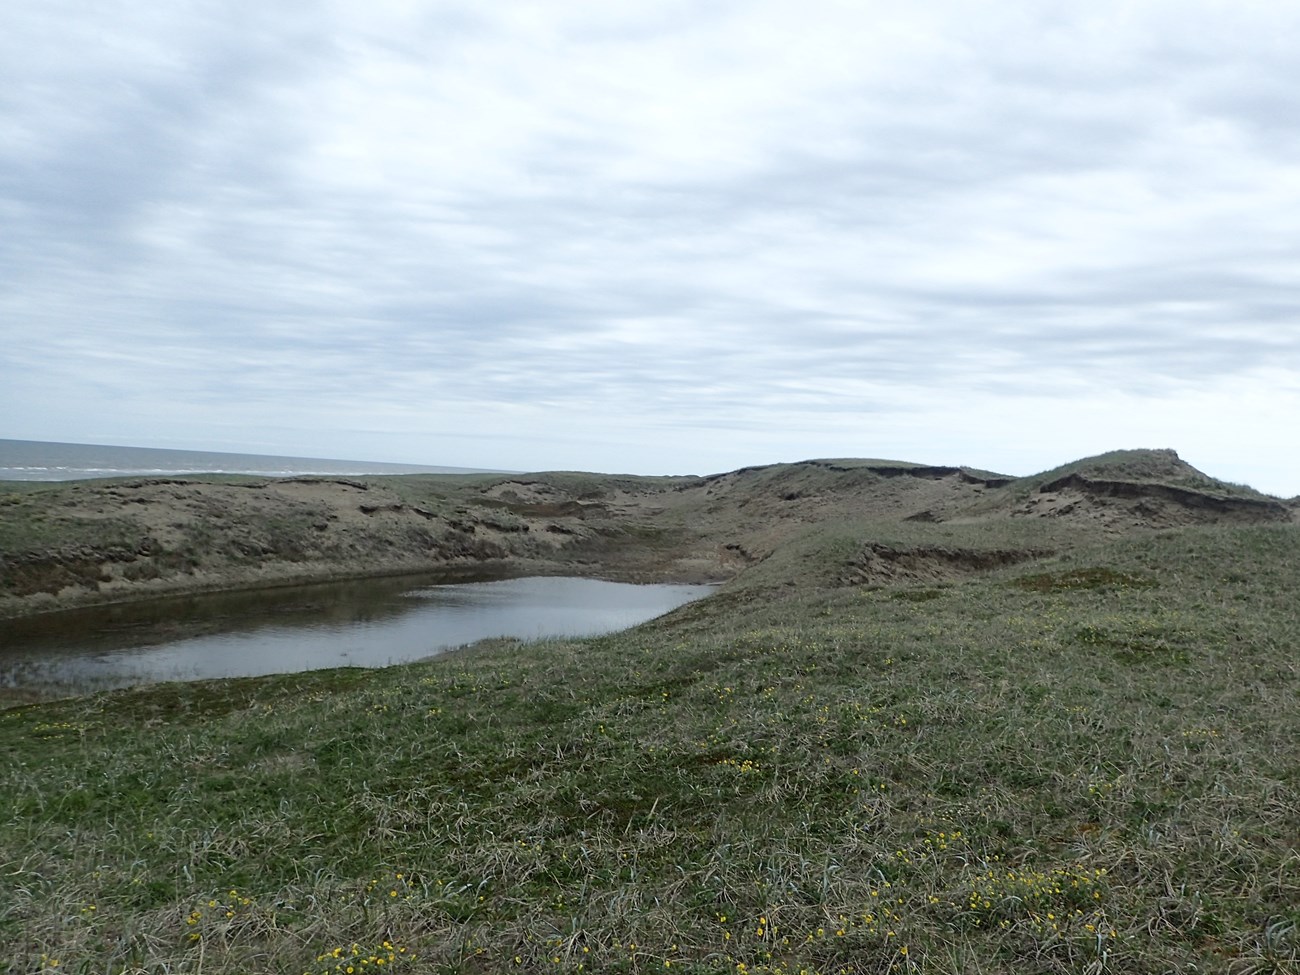 Coastal sand dune with shallow erosion pond